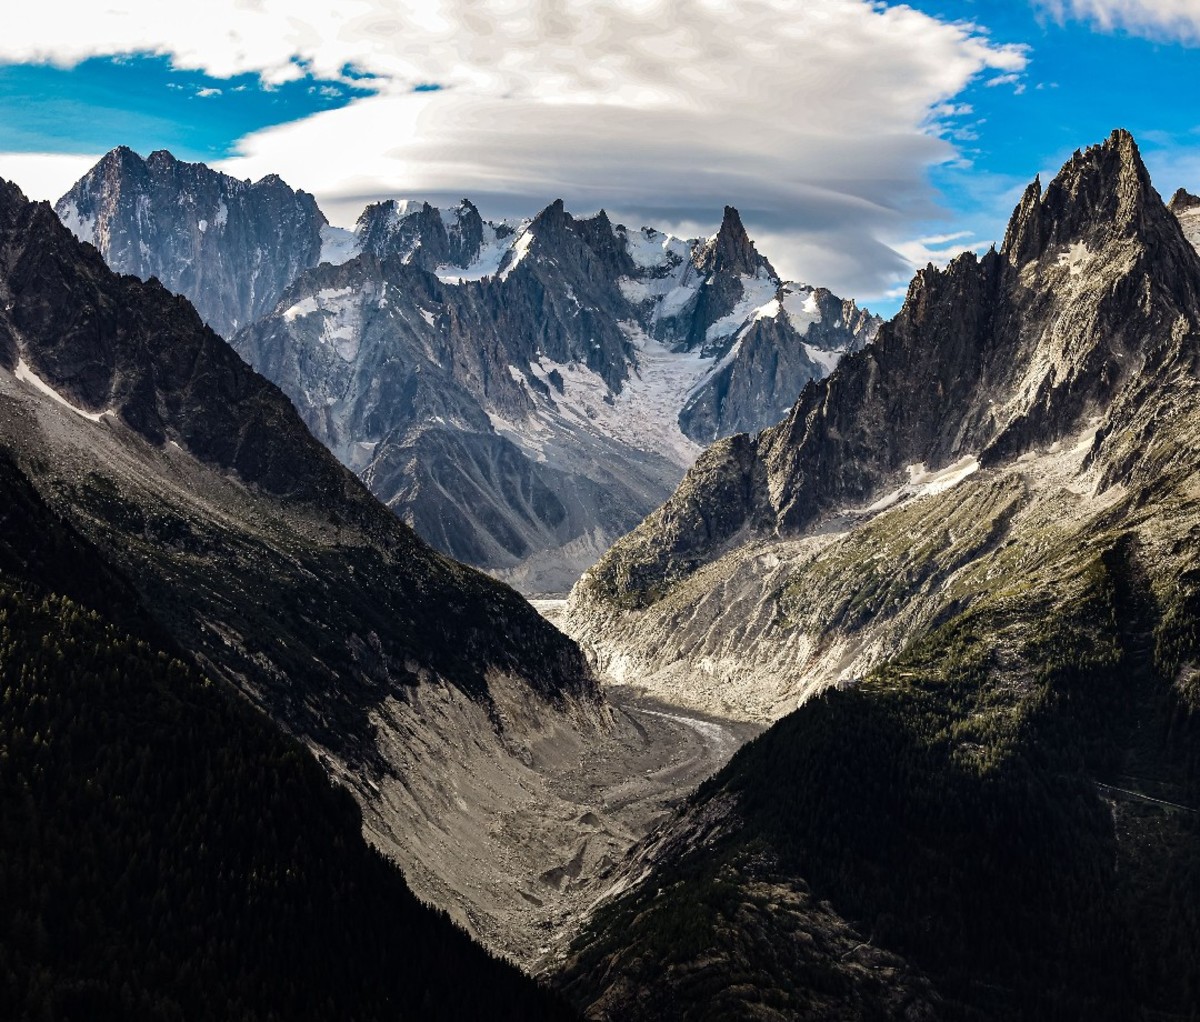 France's largest glacier, La Mer de Glace, on the Mont Blanc massif.